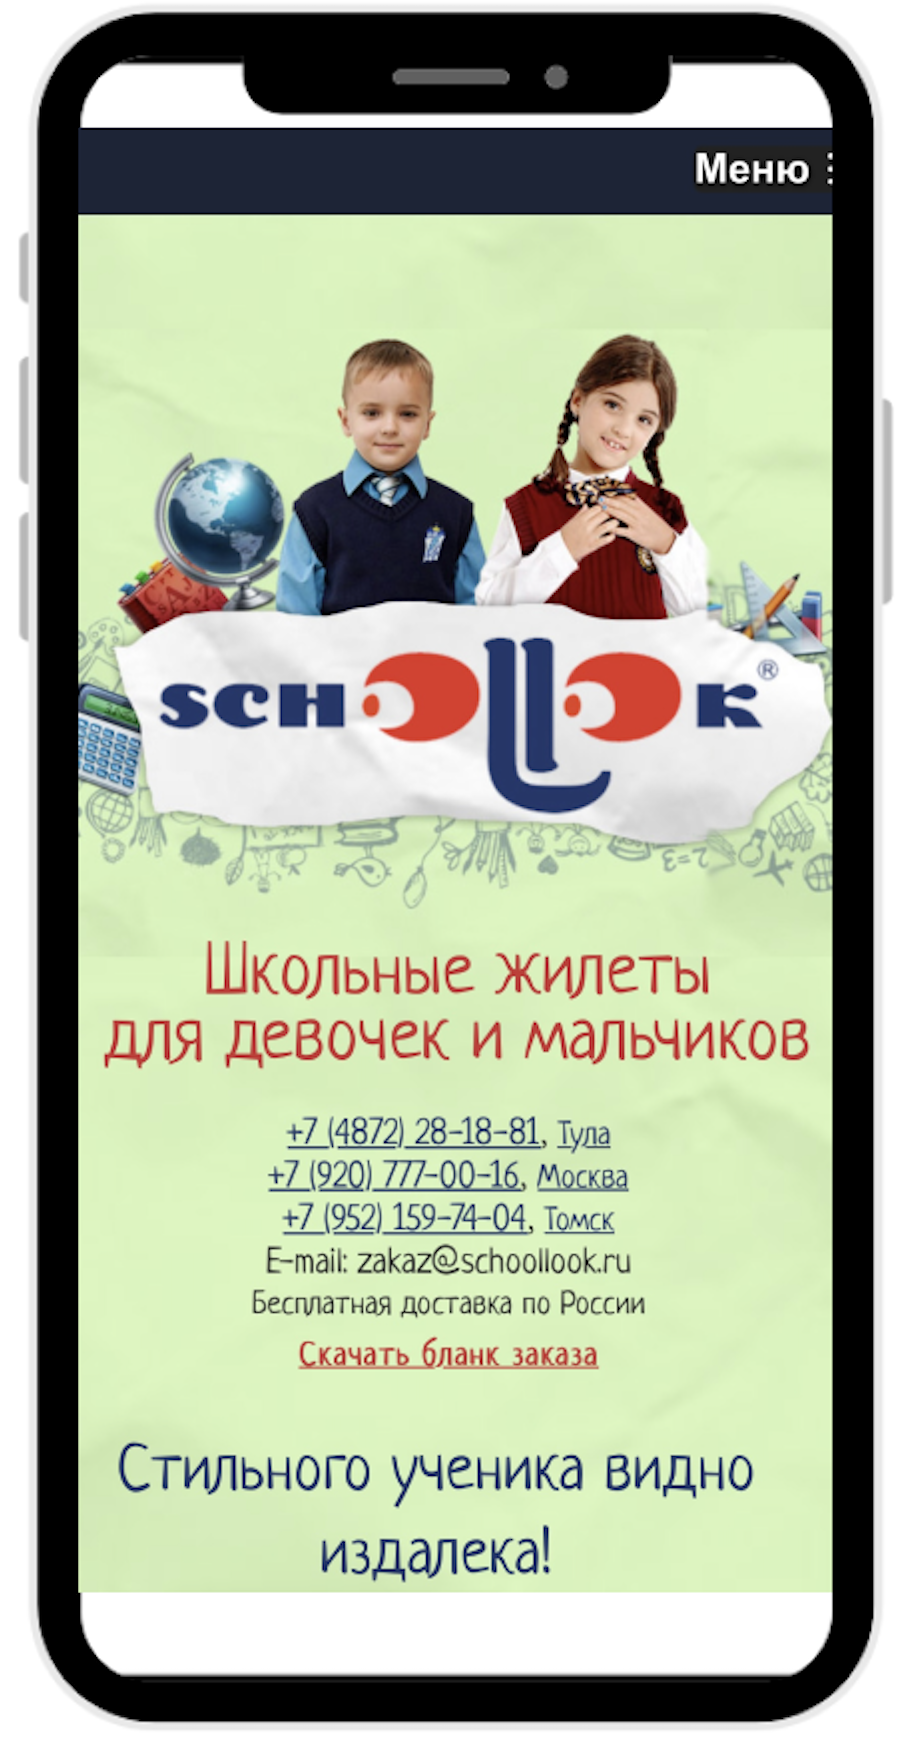 schoollook.ru